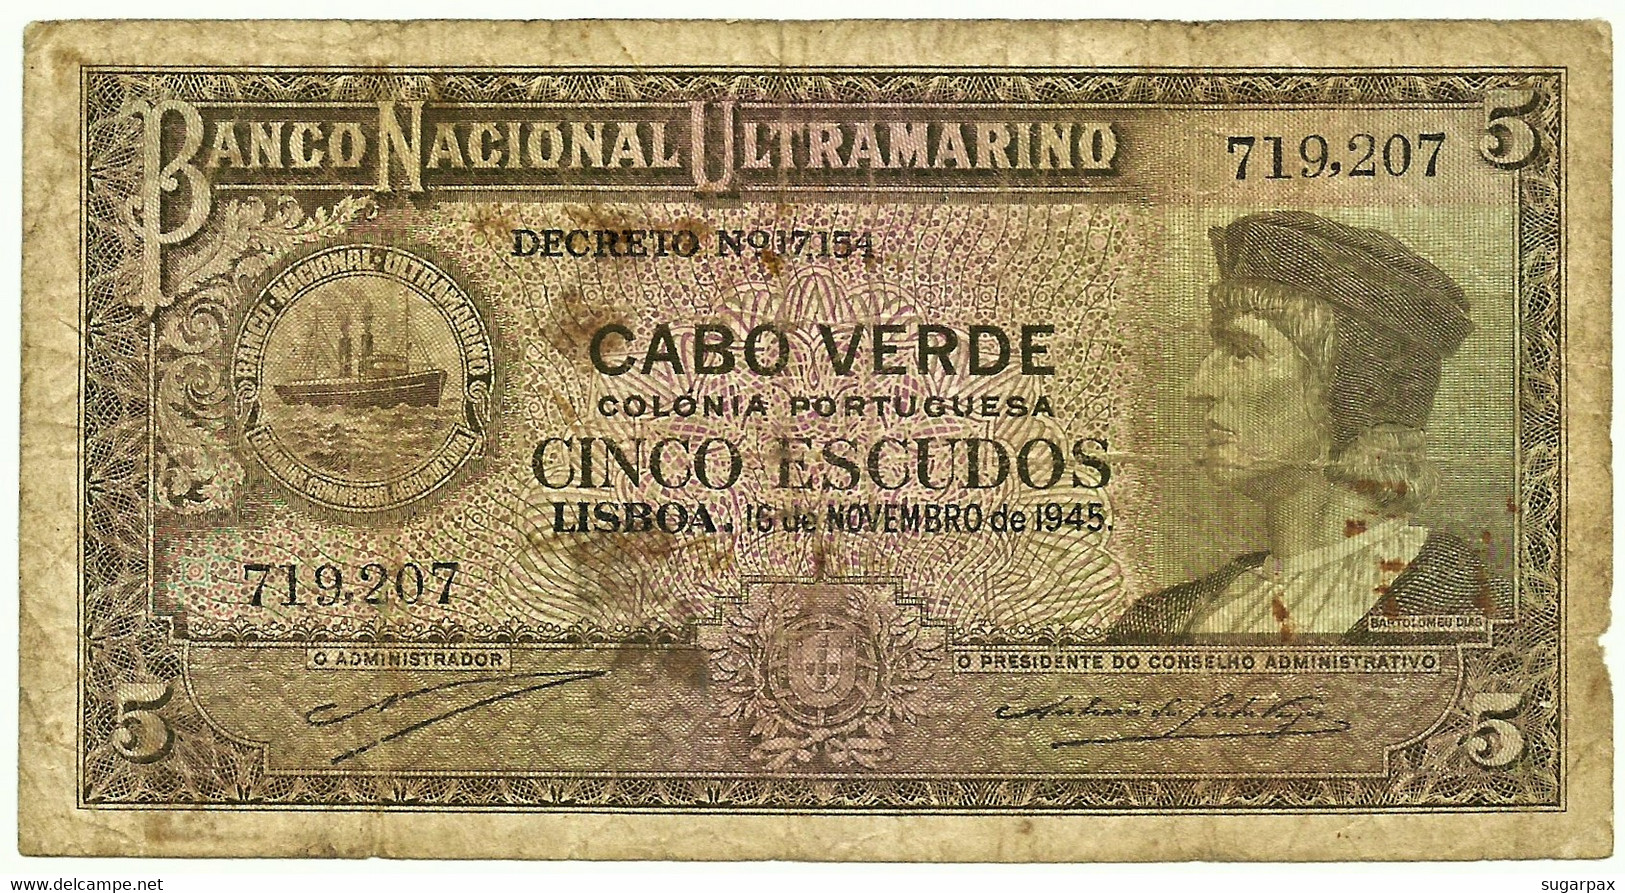 CAPE VERDE - 5 ESCUDOS - 15.11.1945 - Pick 41 - Bartolomeu Dias - Cabo Verde